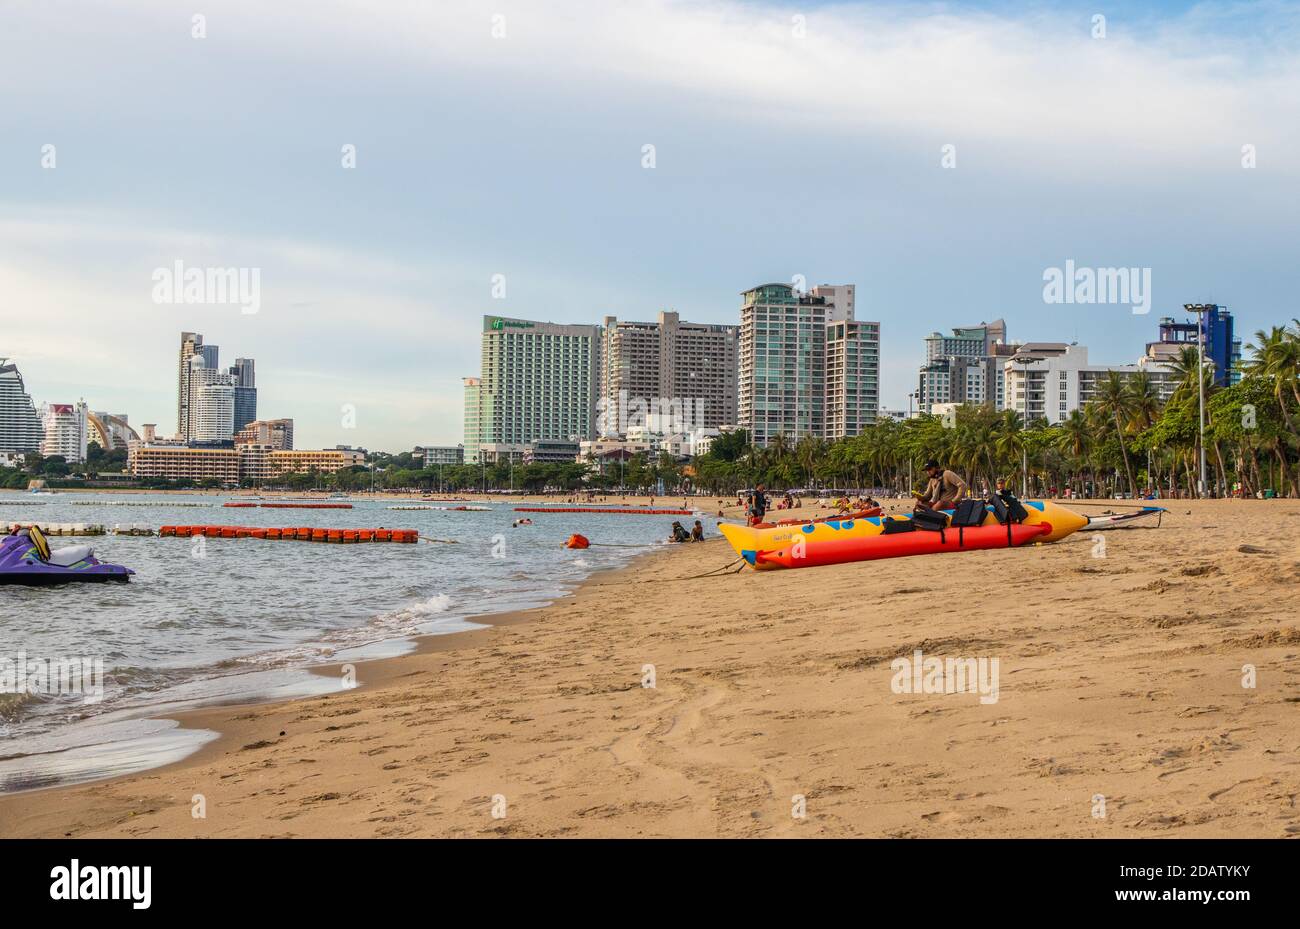 Le paysage urbain et la plage de Pattaya Thaïlande Asie Banque D'Images